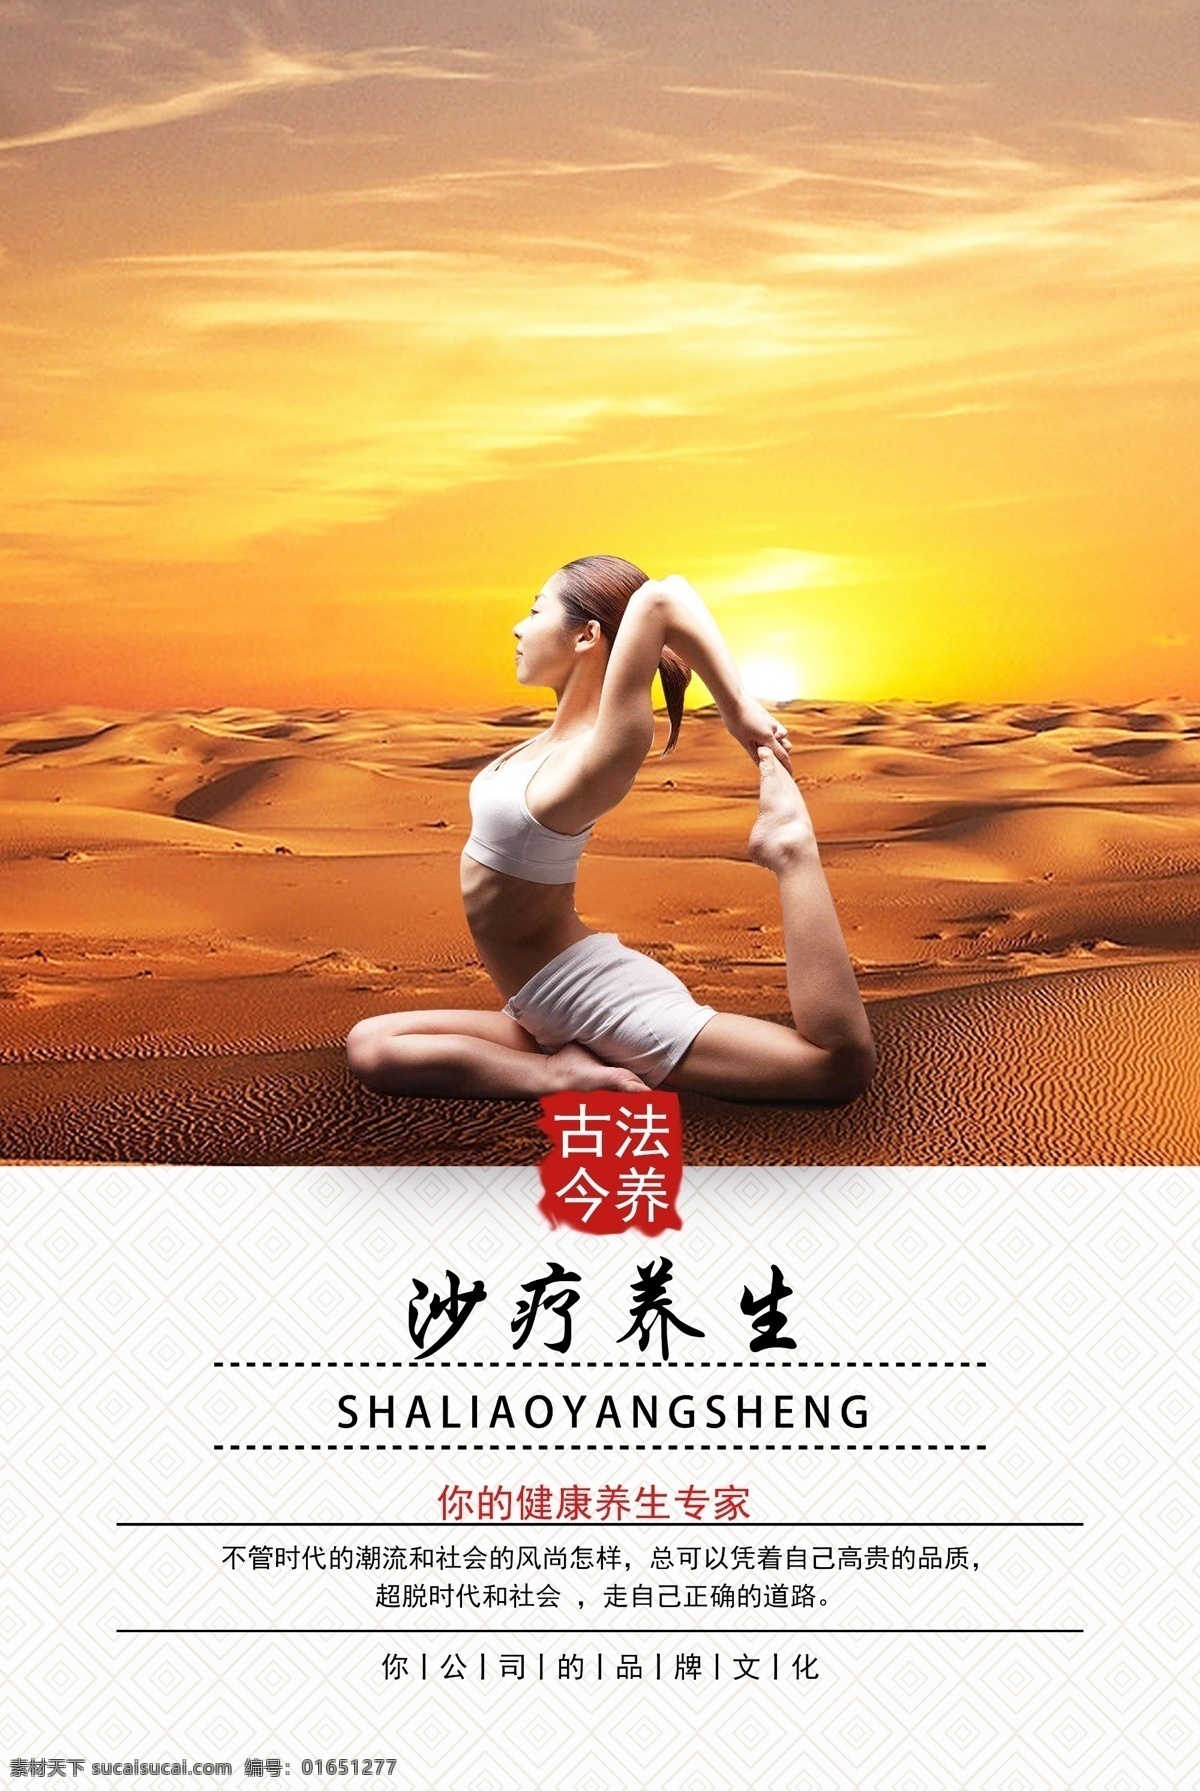 沙疗养生 沙漠 时尚 美女 瑜伽 健身 塑形 健康 沙疗 养生 保健 清新 海报 美容 保养